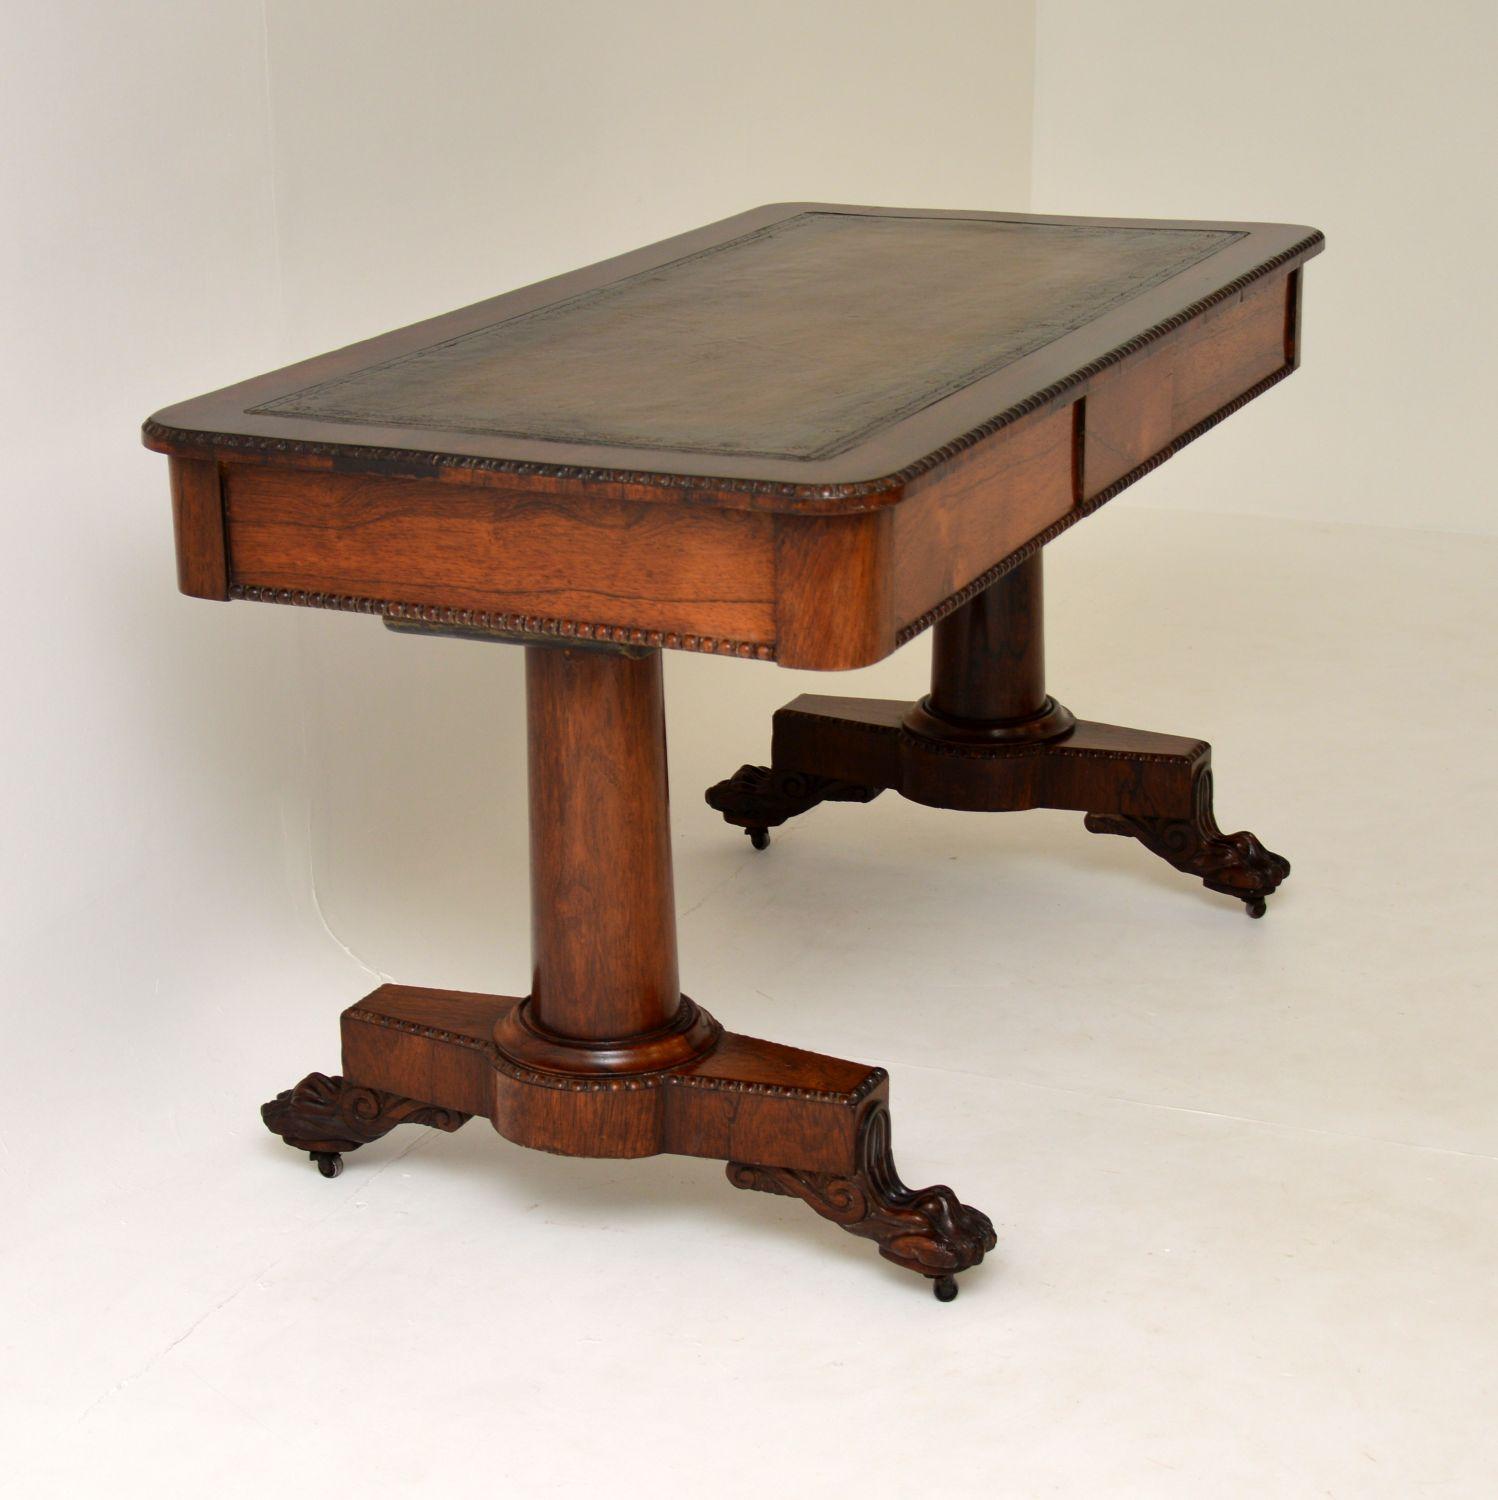 Ein absolut atemberaubender antiker Schreibtisch aus Holz mit einer eingelegten Lederplatte. Sie stammt aus der Zeit Wilhelms IV. und wird auf die Zeit zwischen 1830 und 1840 datiert.

Es ist groß und beeindruckend, die Qualität ist durchweg